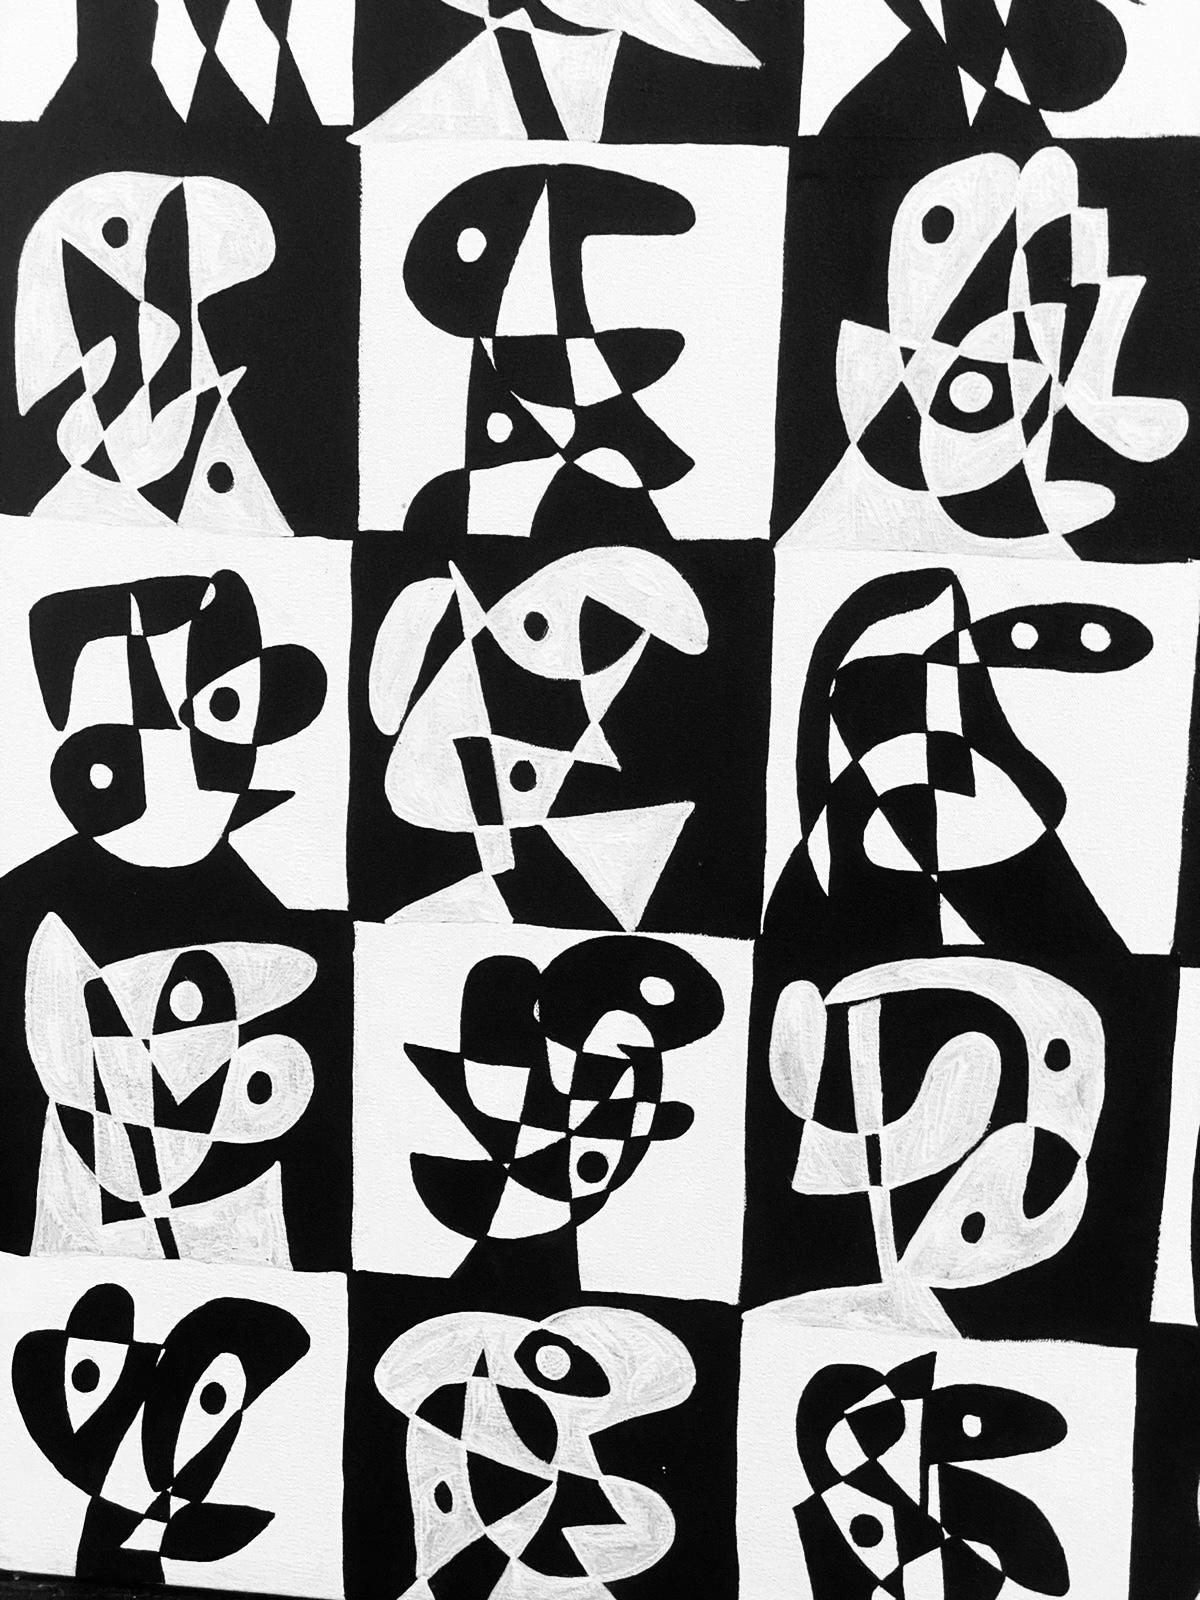 Art contemporain, peinture abstraite
Acrylique sur toile
160x150cm
Signé 



A propos de l'artiste
Enrique Pichardo (Mexico, 1973) est diplômé de l'Escuela Nacional de Pintura, Escultura y Grabado (ENPEG) 